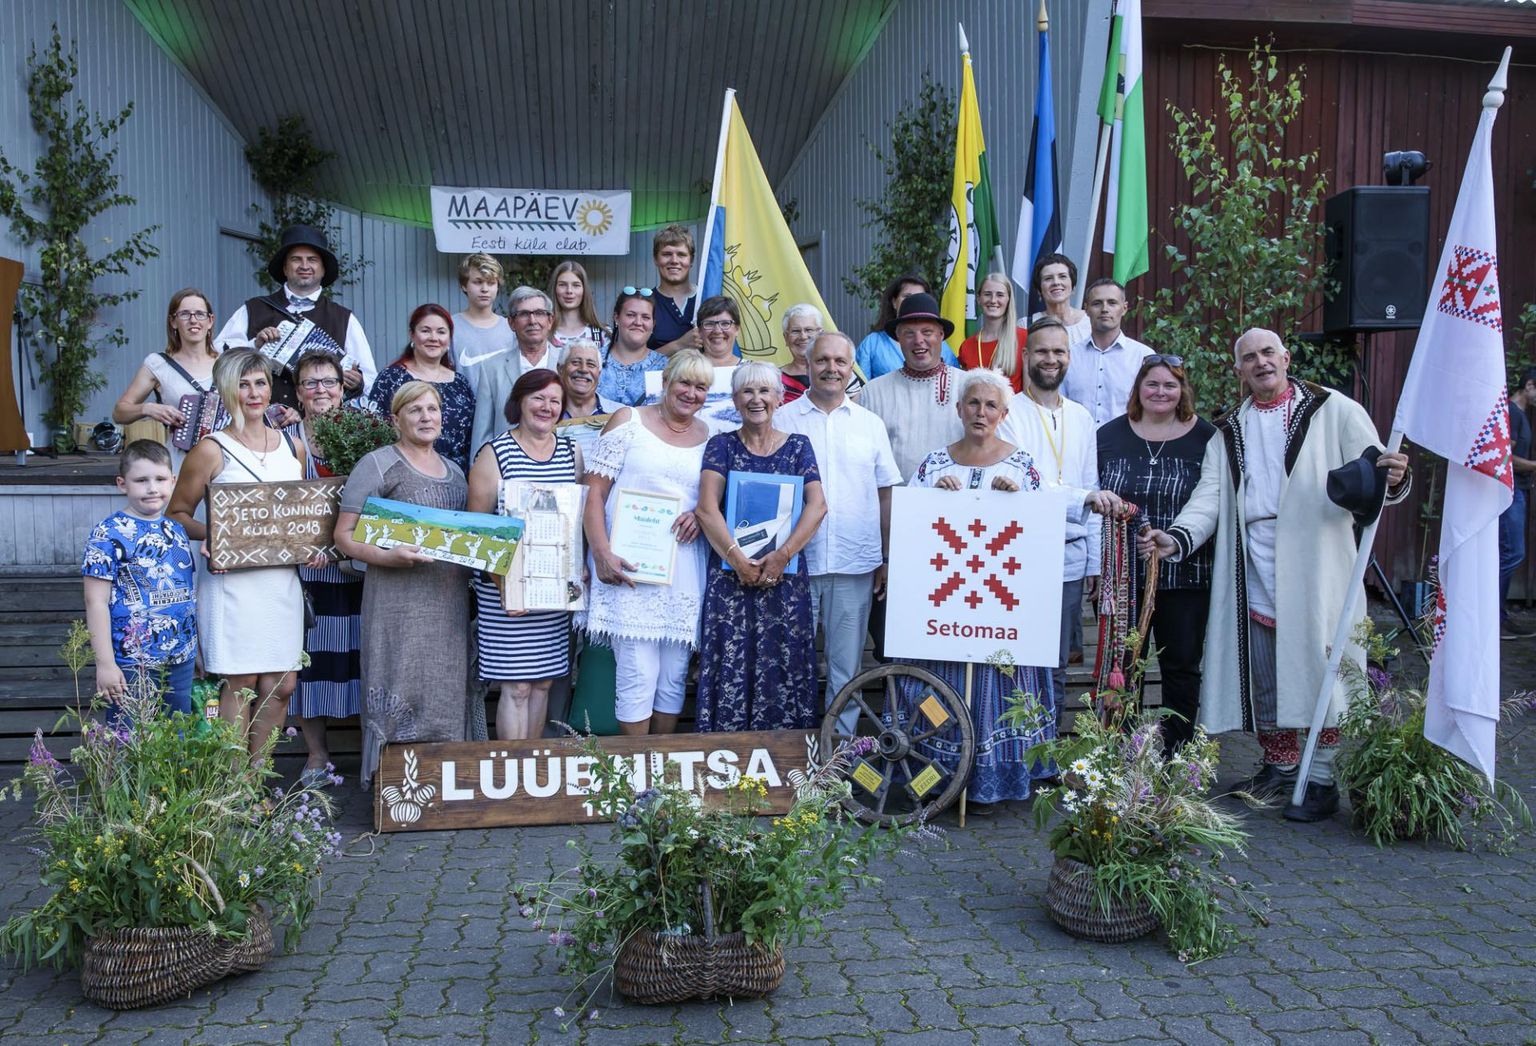 Aasta küla Lüübnitsa esindajad koos õnnitlejatega.